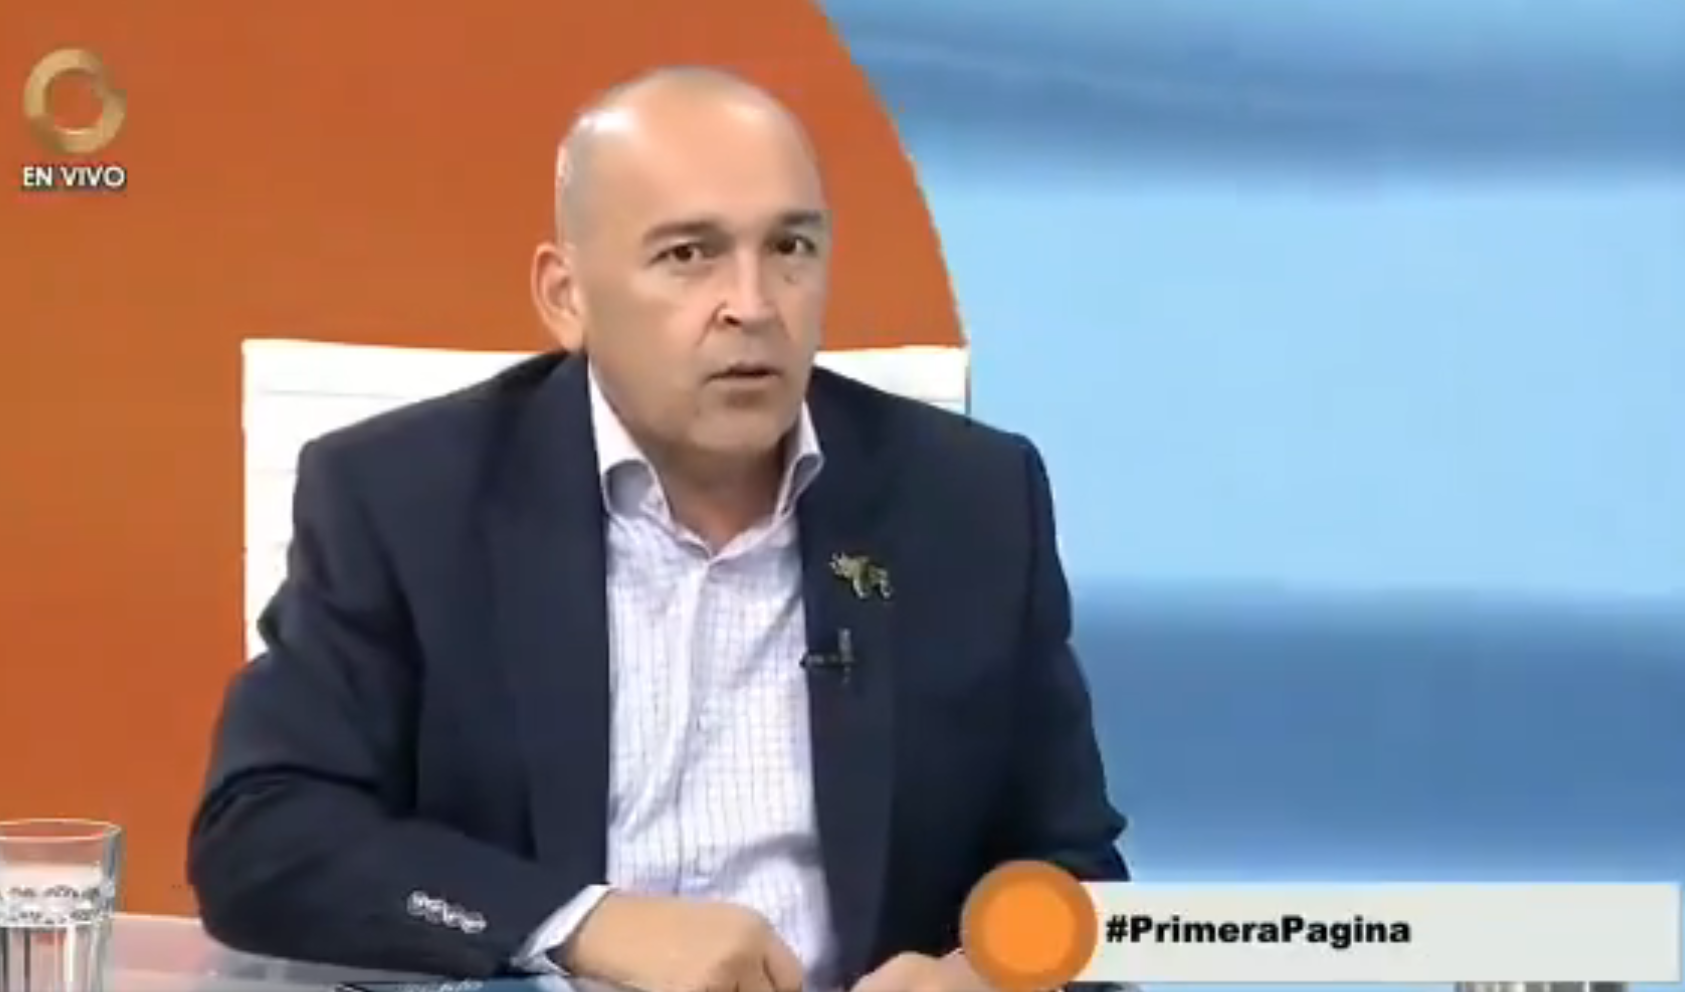 Francisco Torrealba dijo que el Psuv no usa fondos estatales ni intimida a empleados públicos en campaña